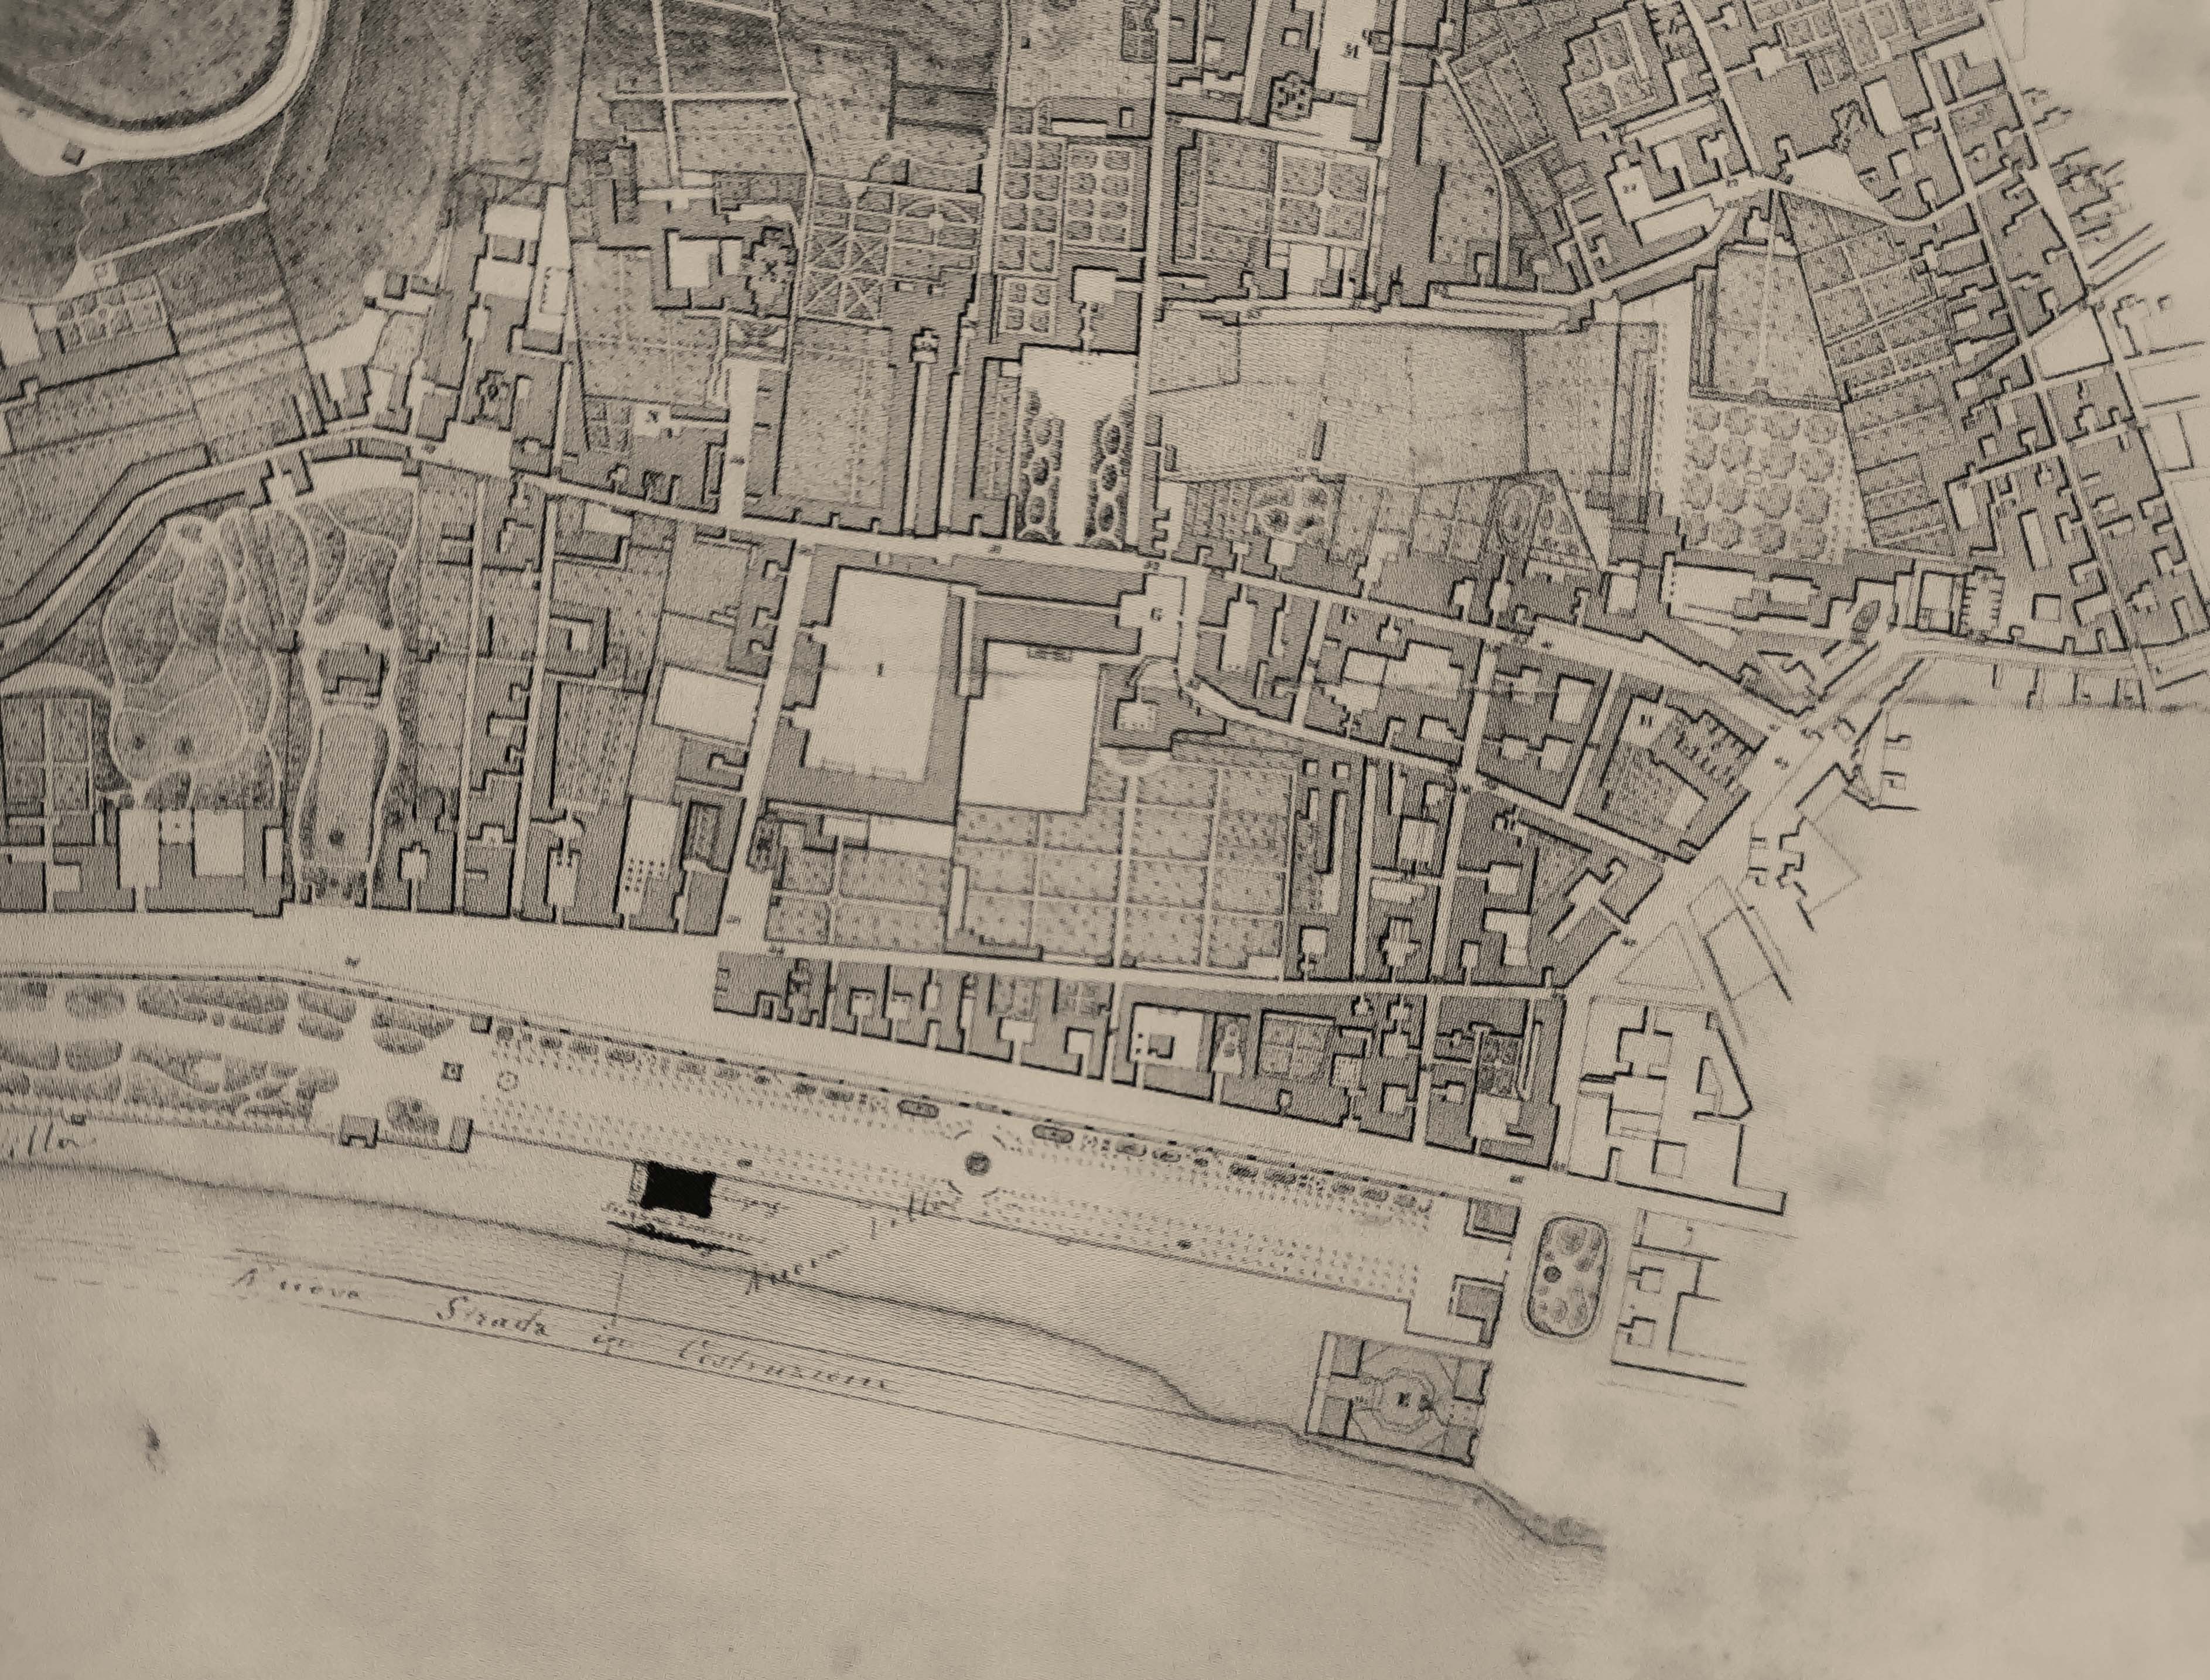 Planimetria della citta di Napoli, 1862